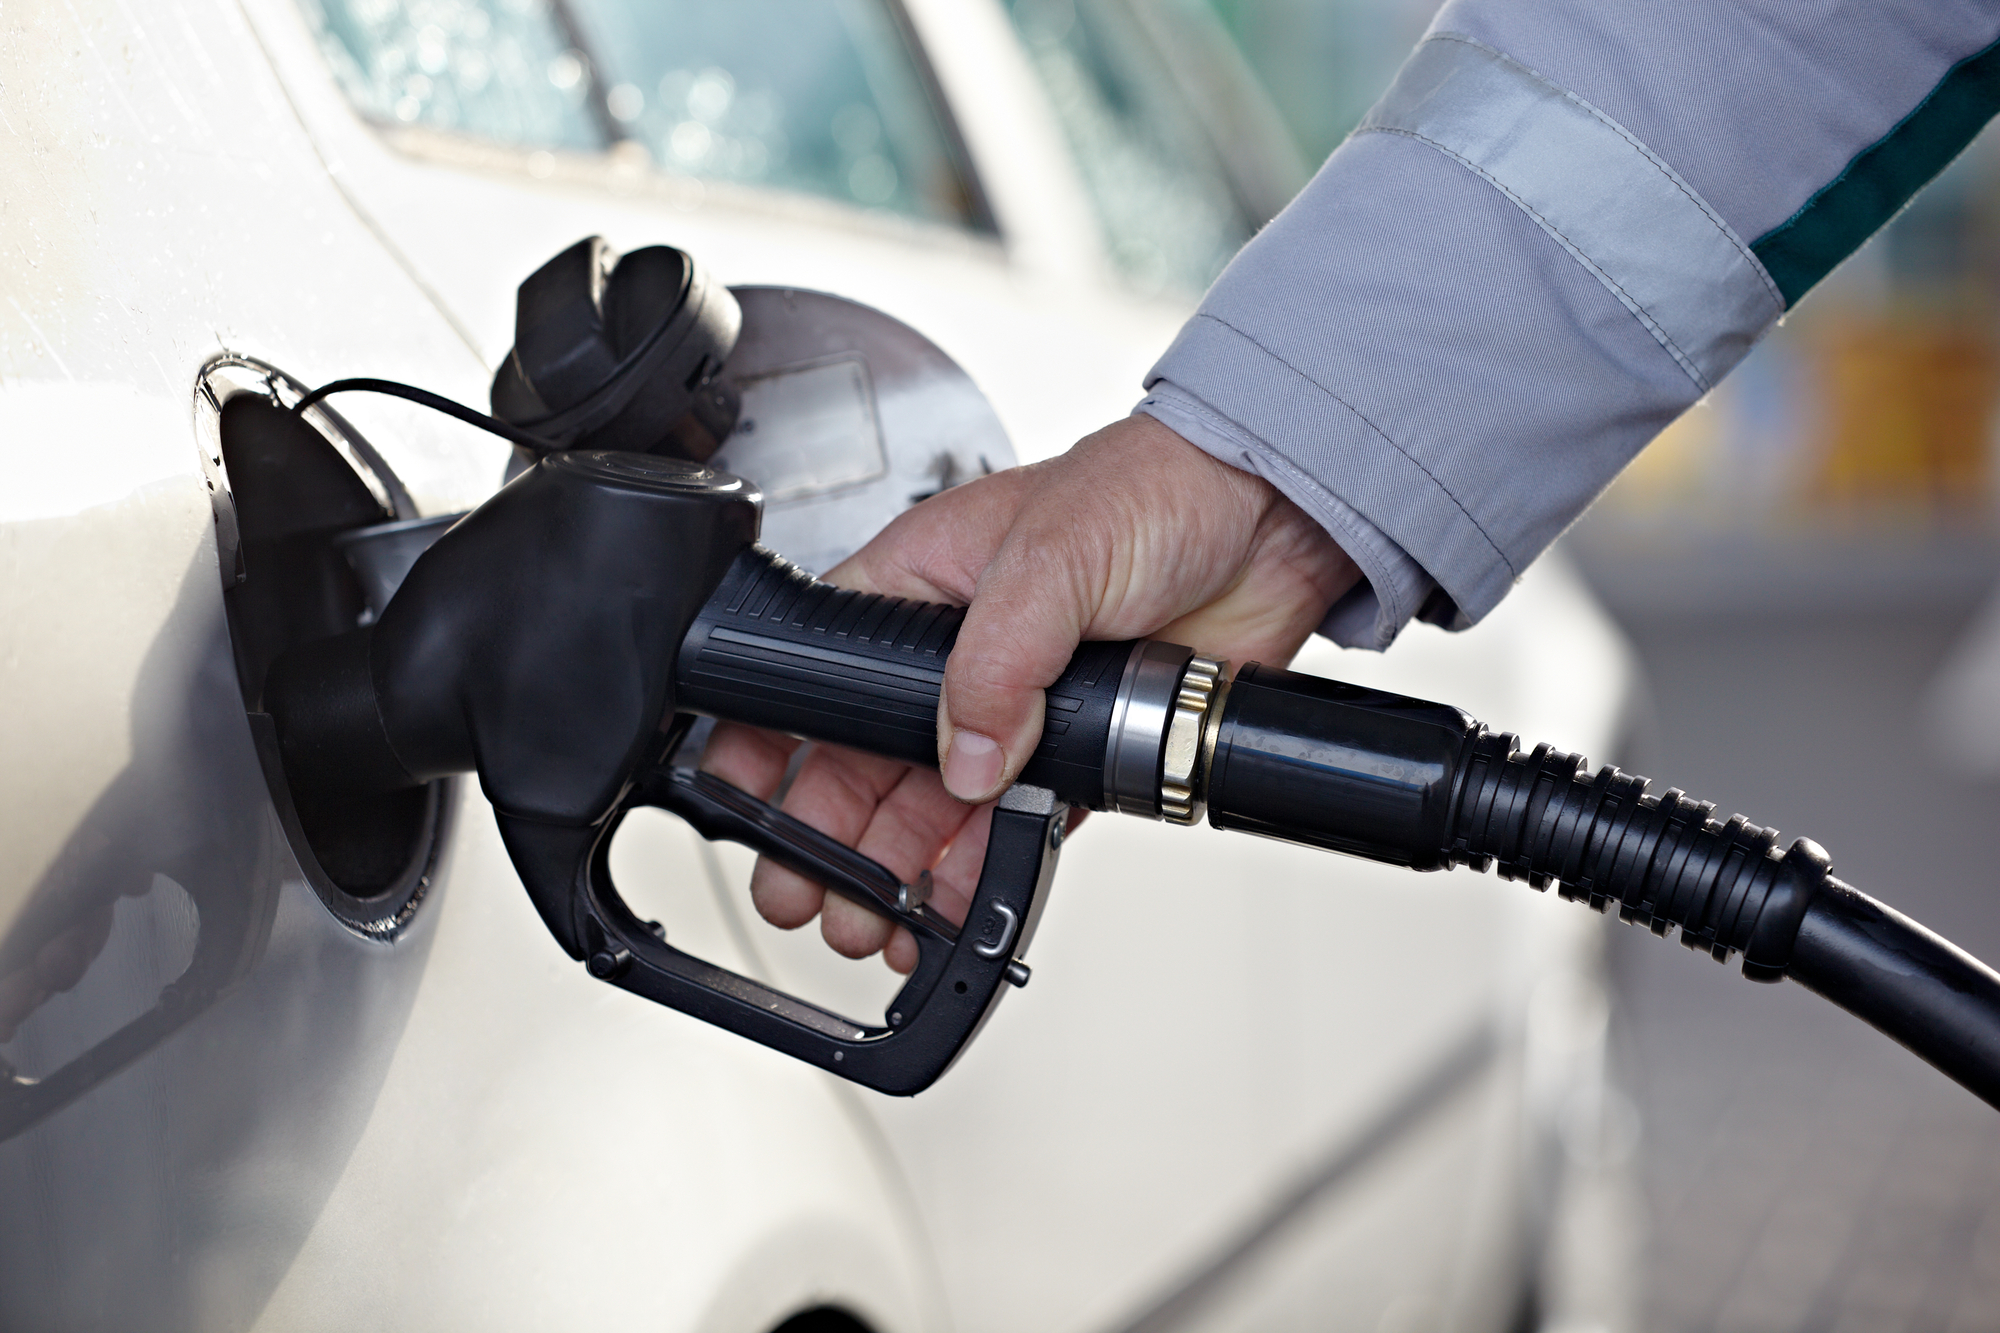 АЗС оштрафуют на полмиллиона гривен за некачественный бензин: подробности